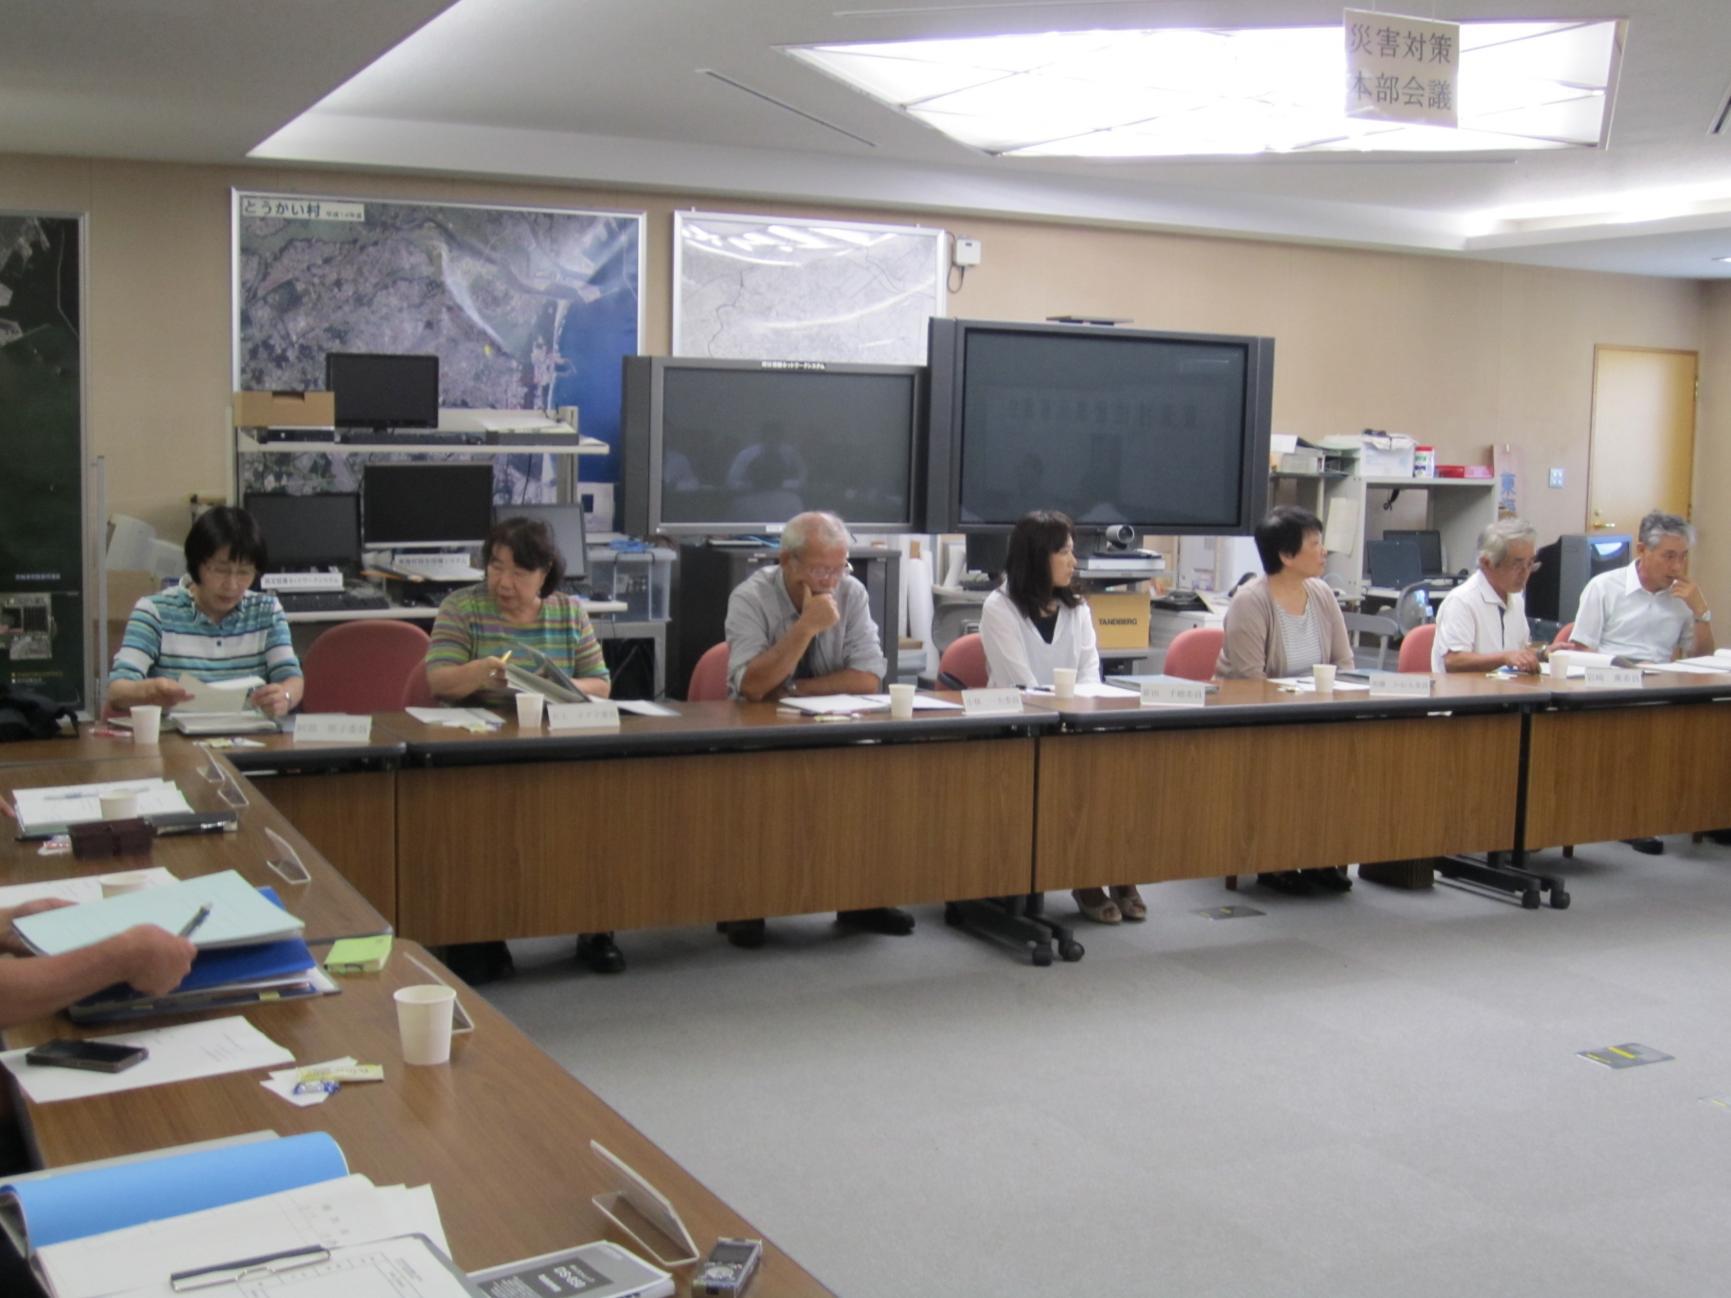 東海村住居表示審議会において、会議室にロの字型に並べられた机に向かって会議を進める参加者のうち、横一列の7名が写っている写真